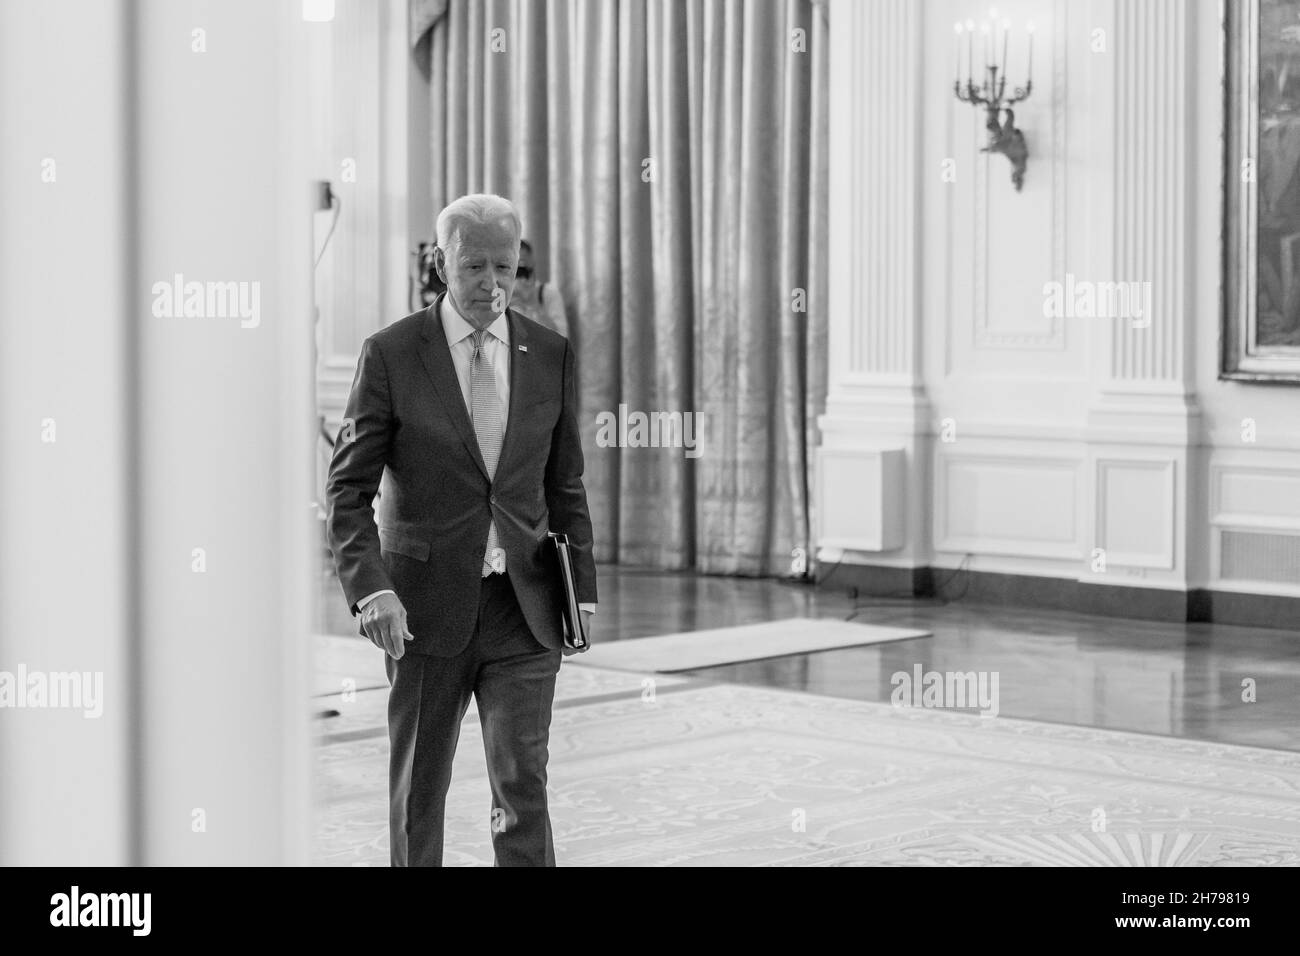 WASHINGTON DC, USA - 12. August 2021 - US-Präsident Joe Biden verlässt den East Room, nachdem er am Donnerstag, Augu, Bemerkungen zu den Kosten für verschreibungspflichtige Medikamente abgegeben hat Stockfoto